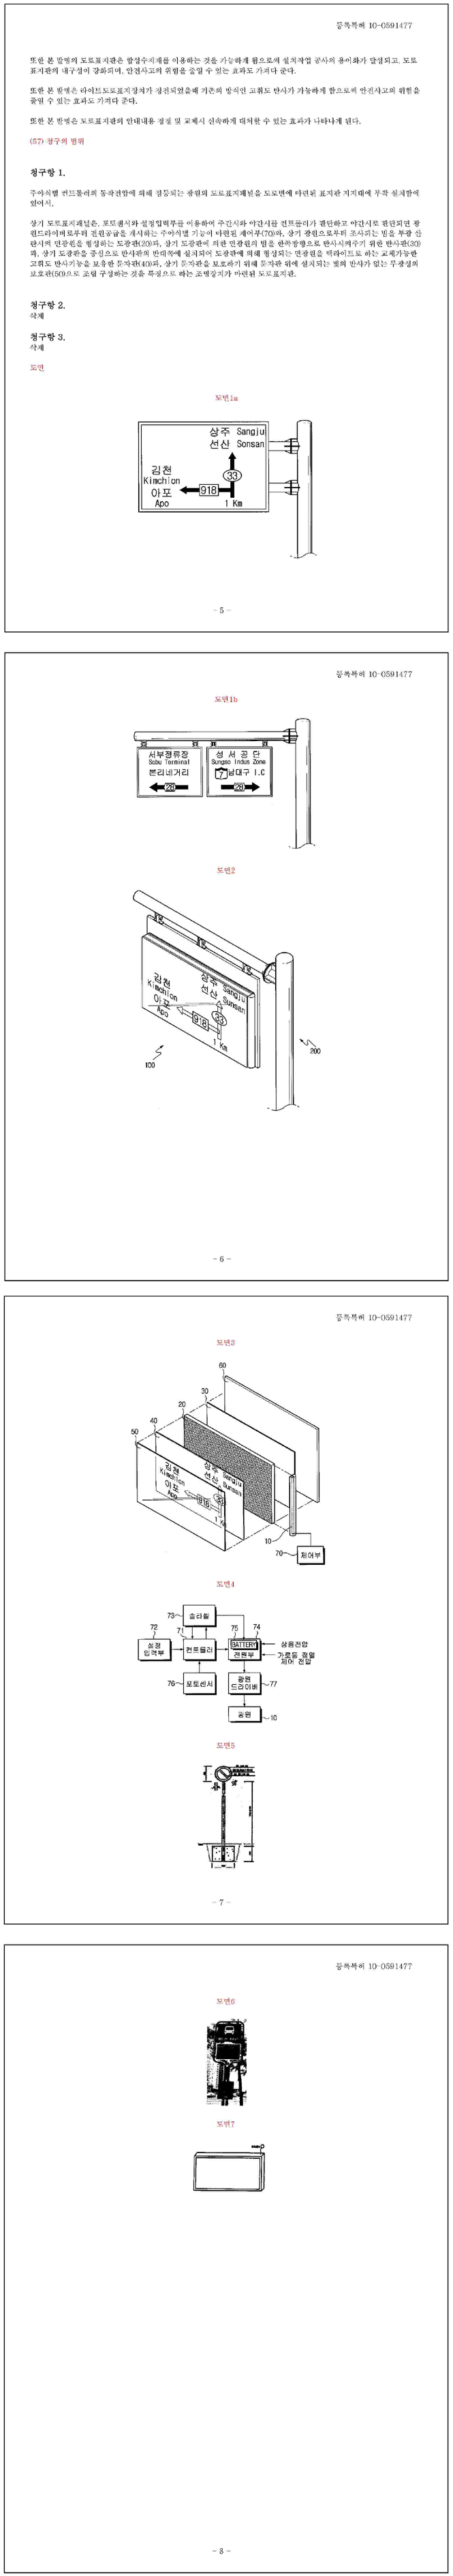 특허 제10-0591477호(조명장치가 마련된 도로표지판, 신도산업(주))